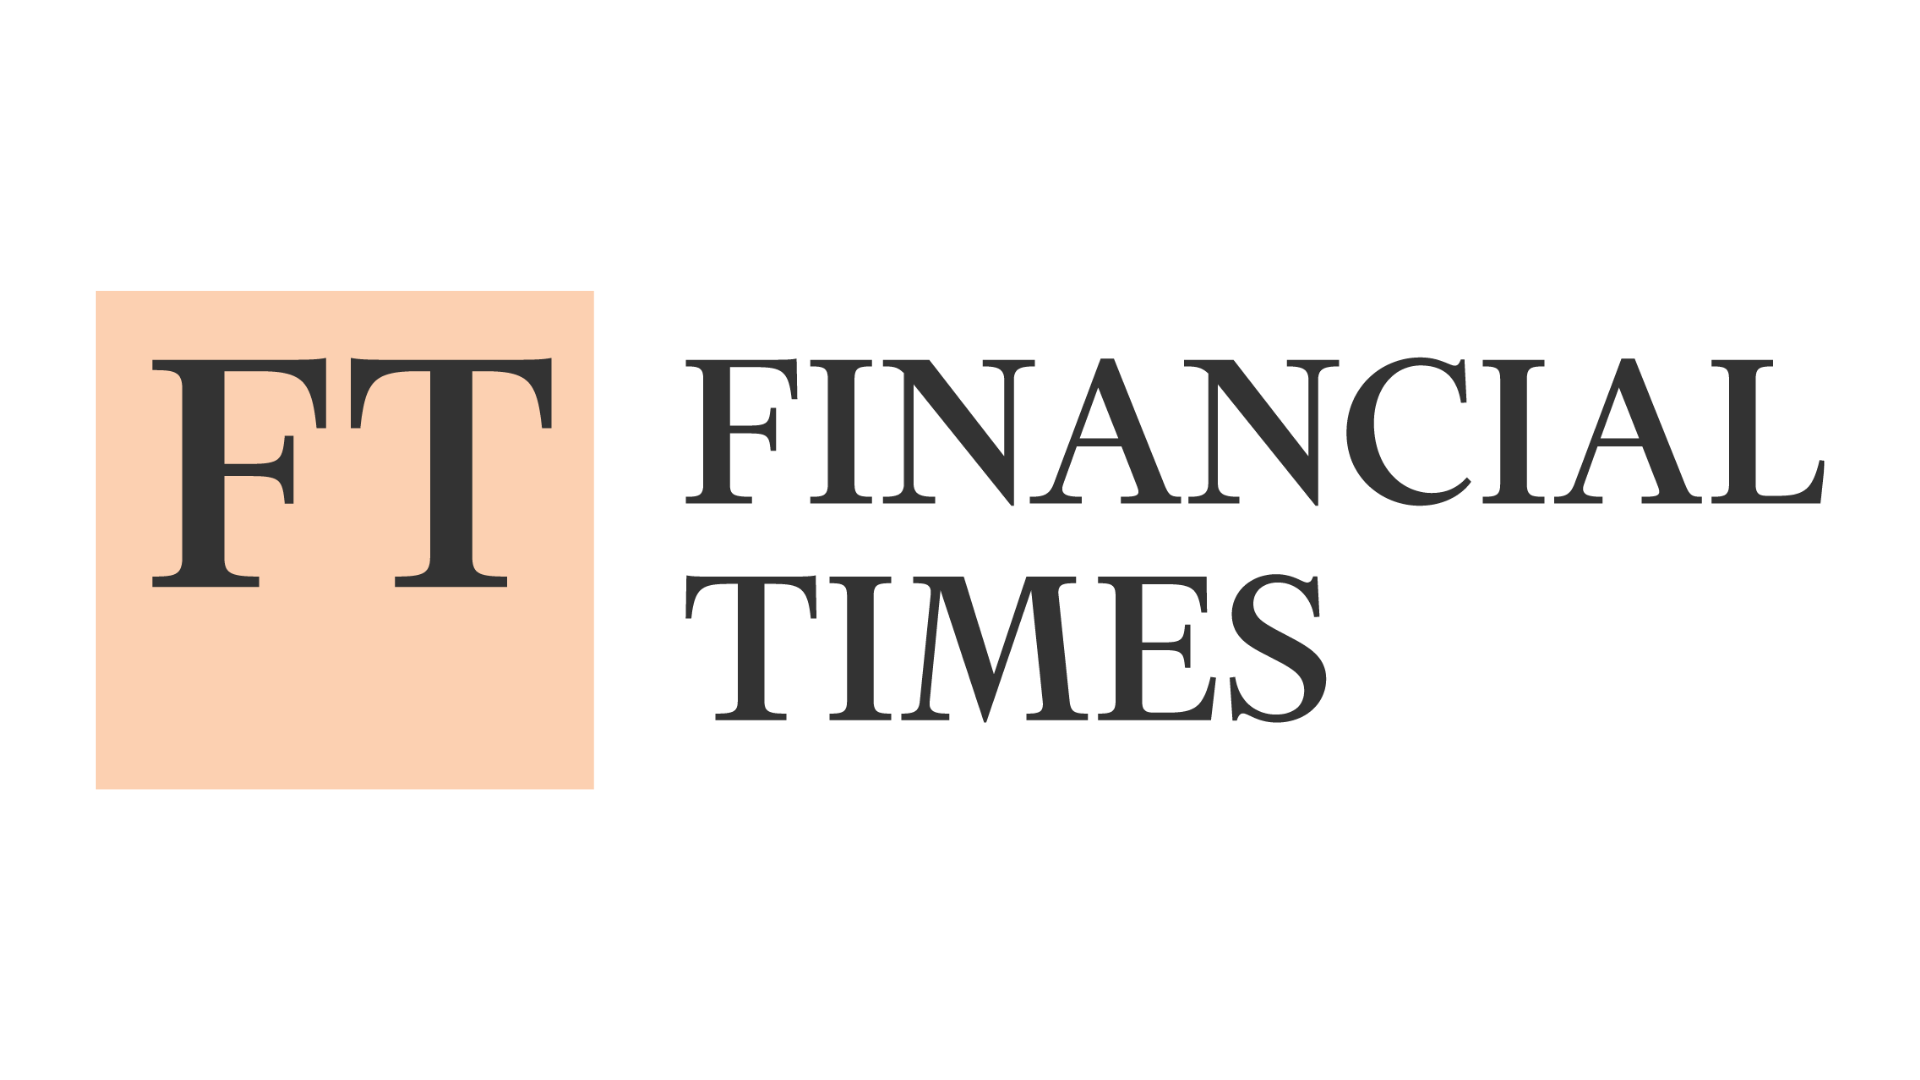 logo-financial-times